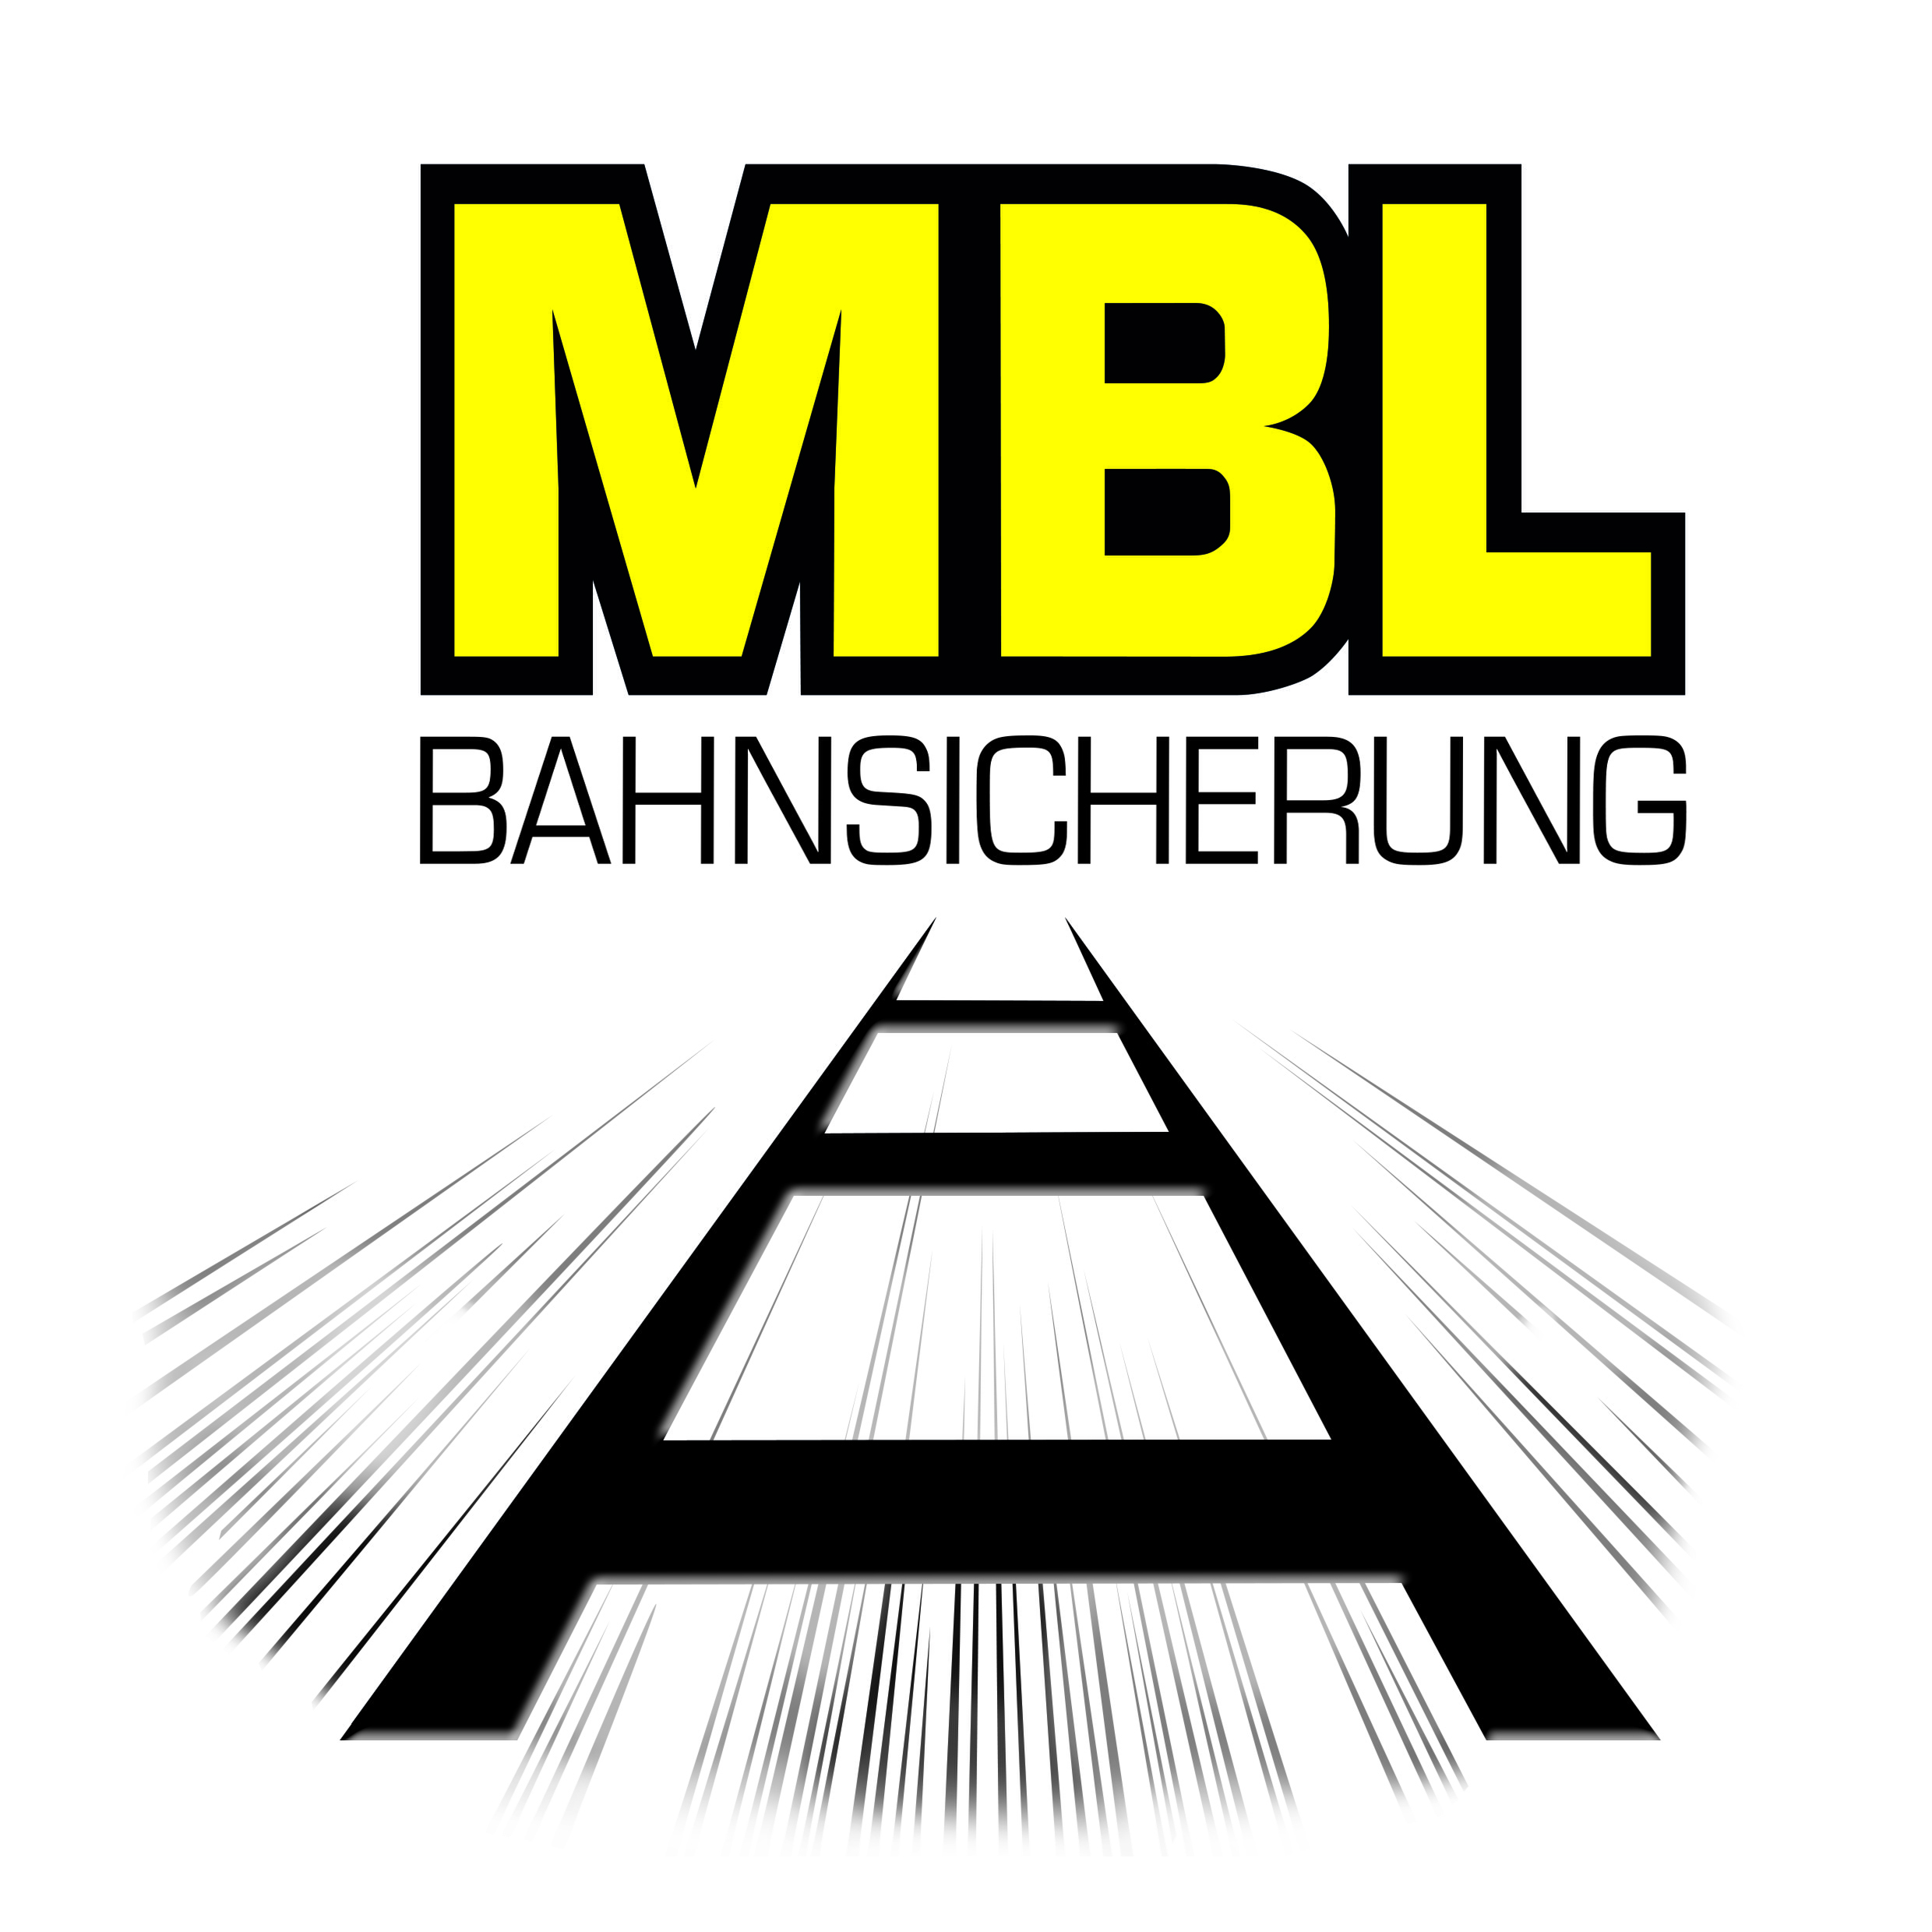 MBL Bahnsicherung